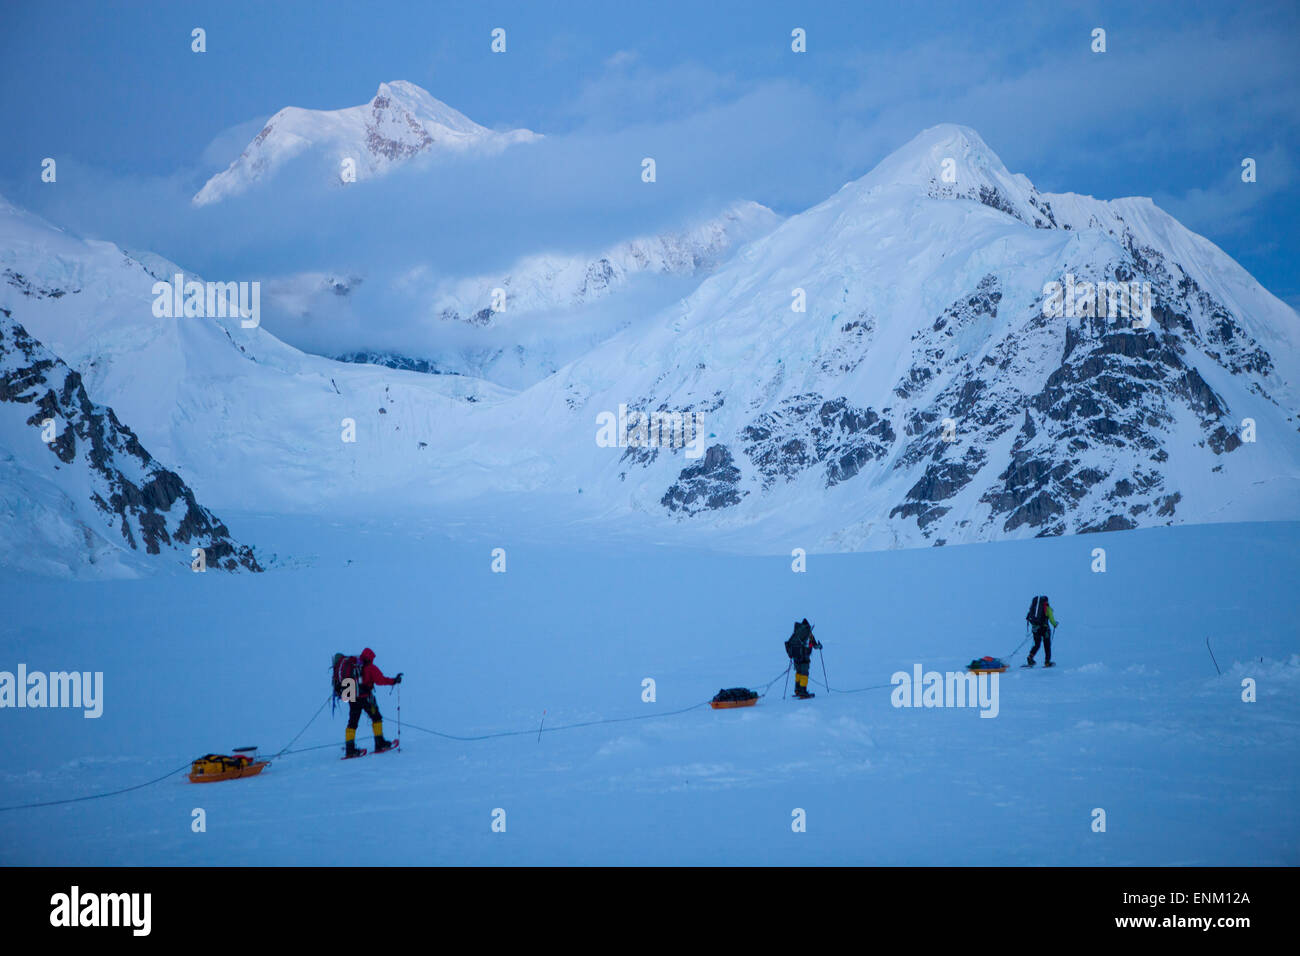 Ein Team von drei Bergsteiger auf ihrem Weg ins Basislager nach erreichen des Gipfels des Mount McKinley, auch bekannt als Denali in Alaska. Mount Hunter im Hintergrund. Stockfoto